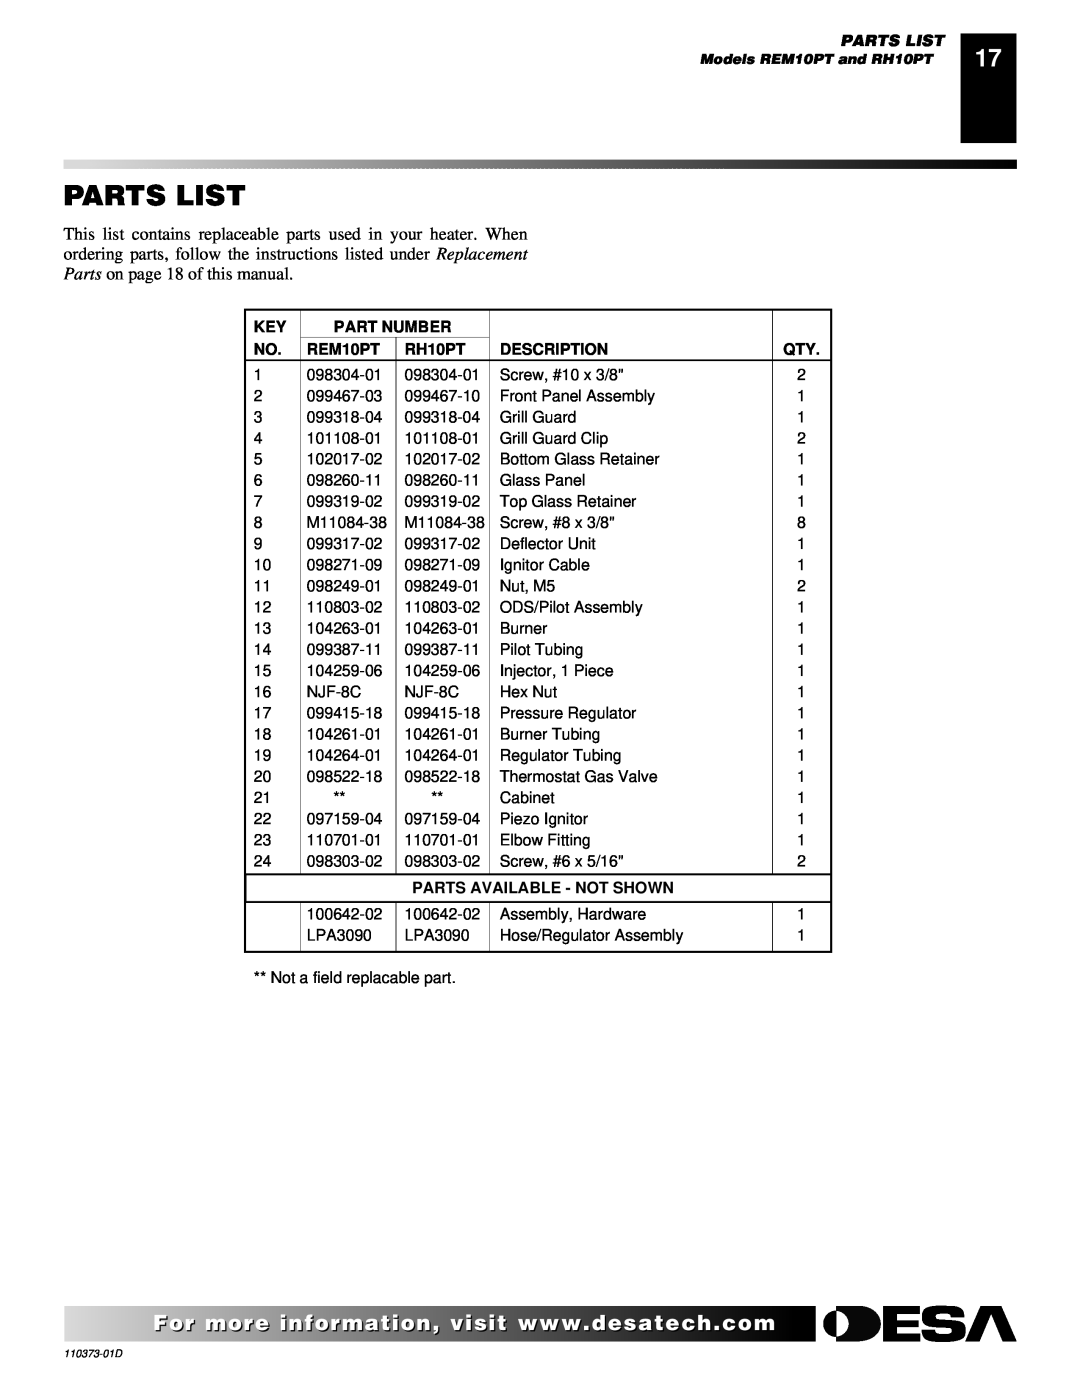 Desa REM10PT RH10PT installation manual Parts List, Part Number, Description, Parts Available - Not Shown 